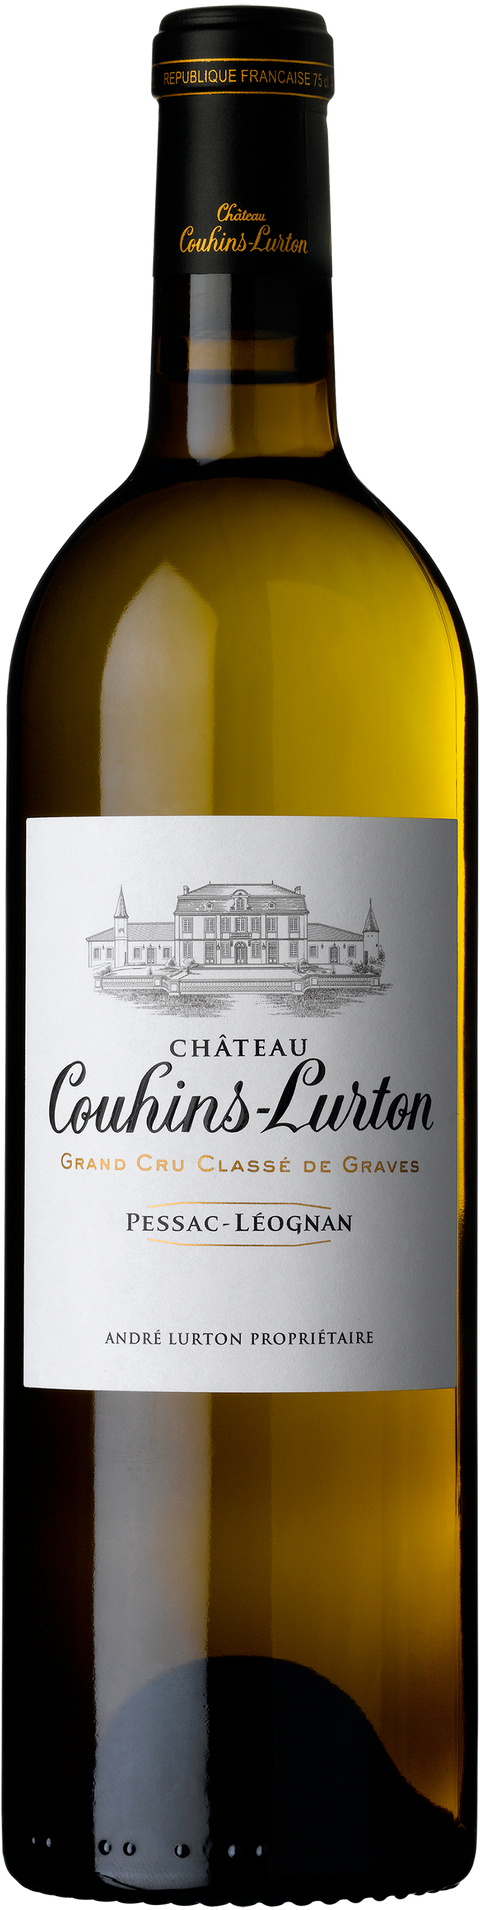 Chateau Couhins-Lurton---2011---Blanc---Château Couhins-Lurton---0.75